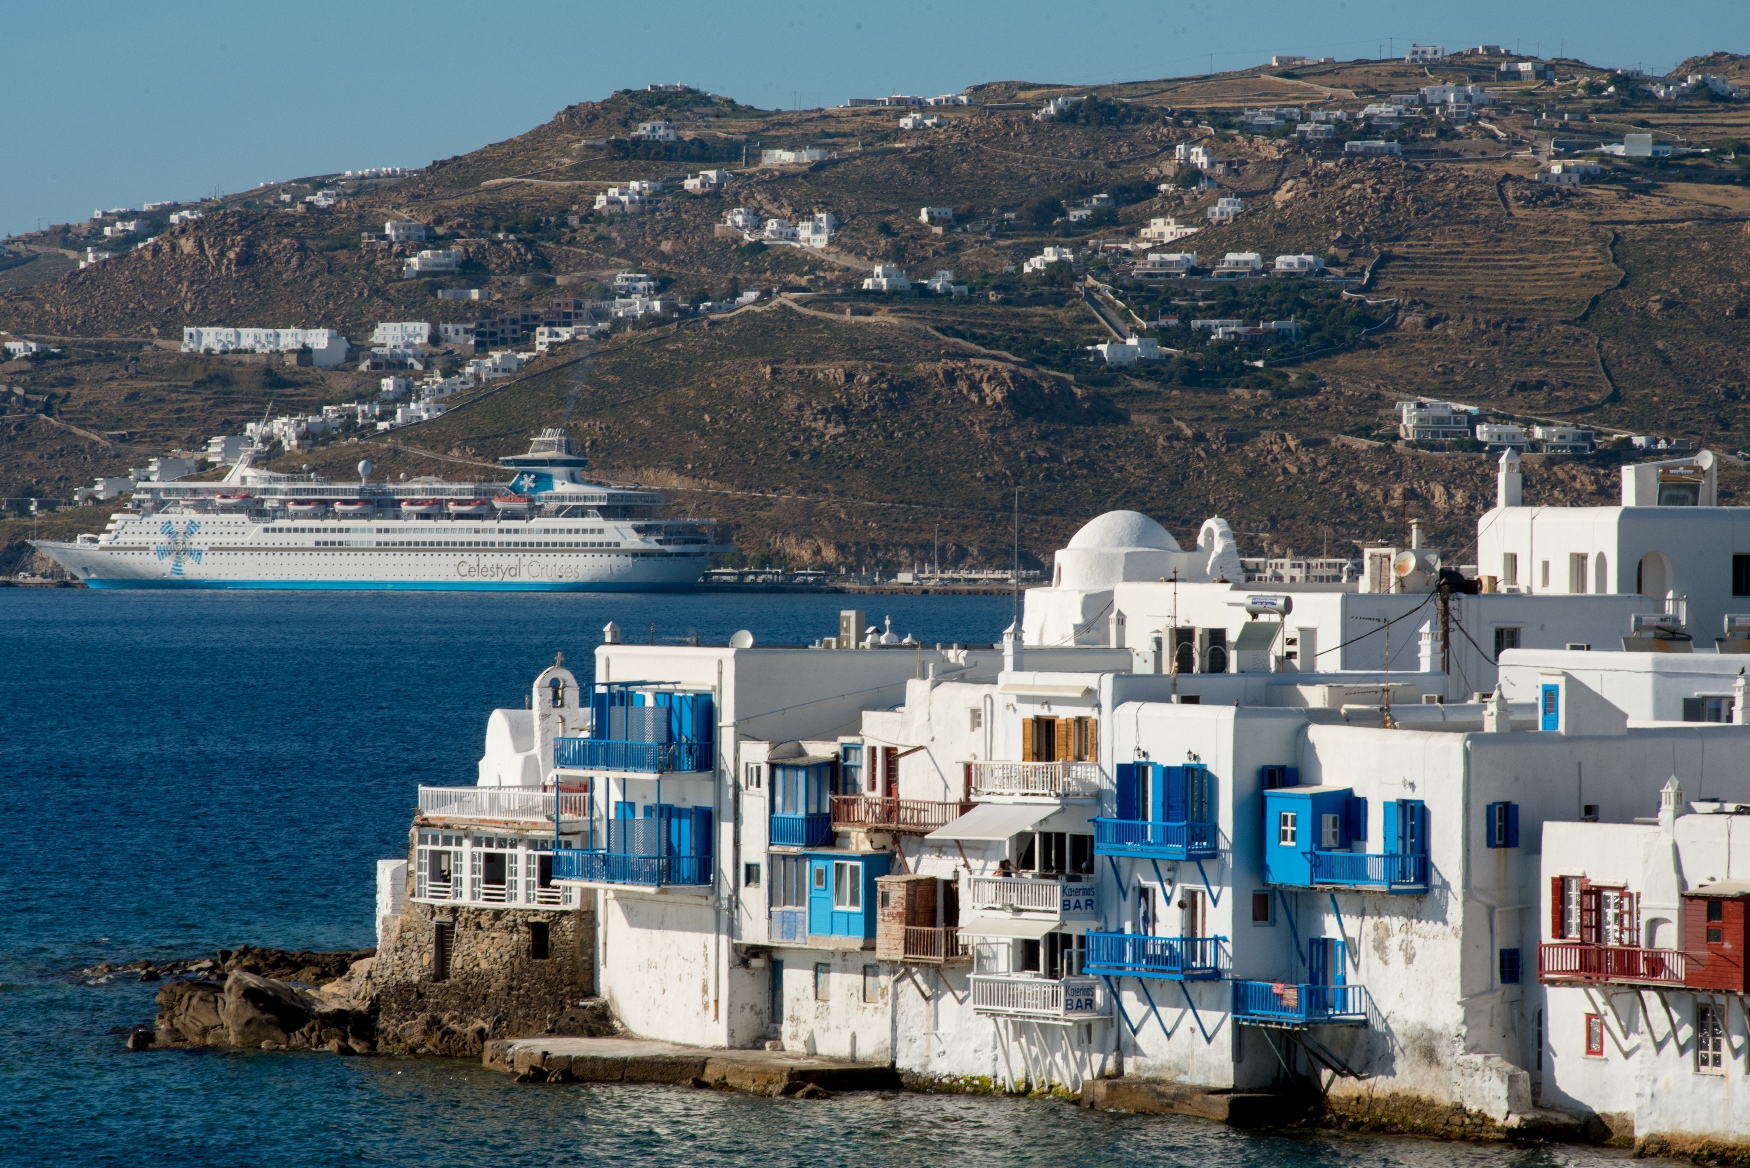 Celestyal Cruises kommt dem Ziel näher, ganzjährig Kreuzfahrten anzubieten und  Gästen eine noch größere Auswahl an Destinationen in der Ägäis, im Mittelmeer und nun auch in der Adria zu offerieren.